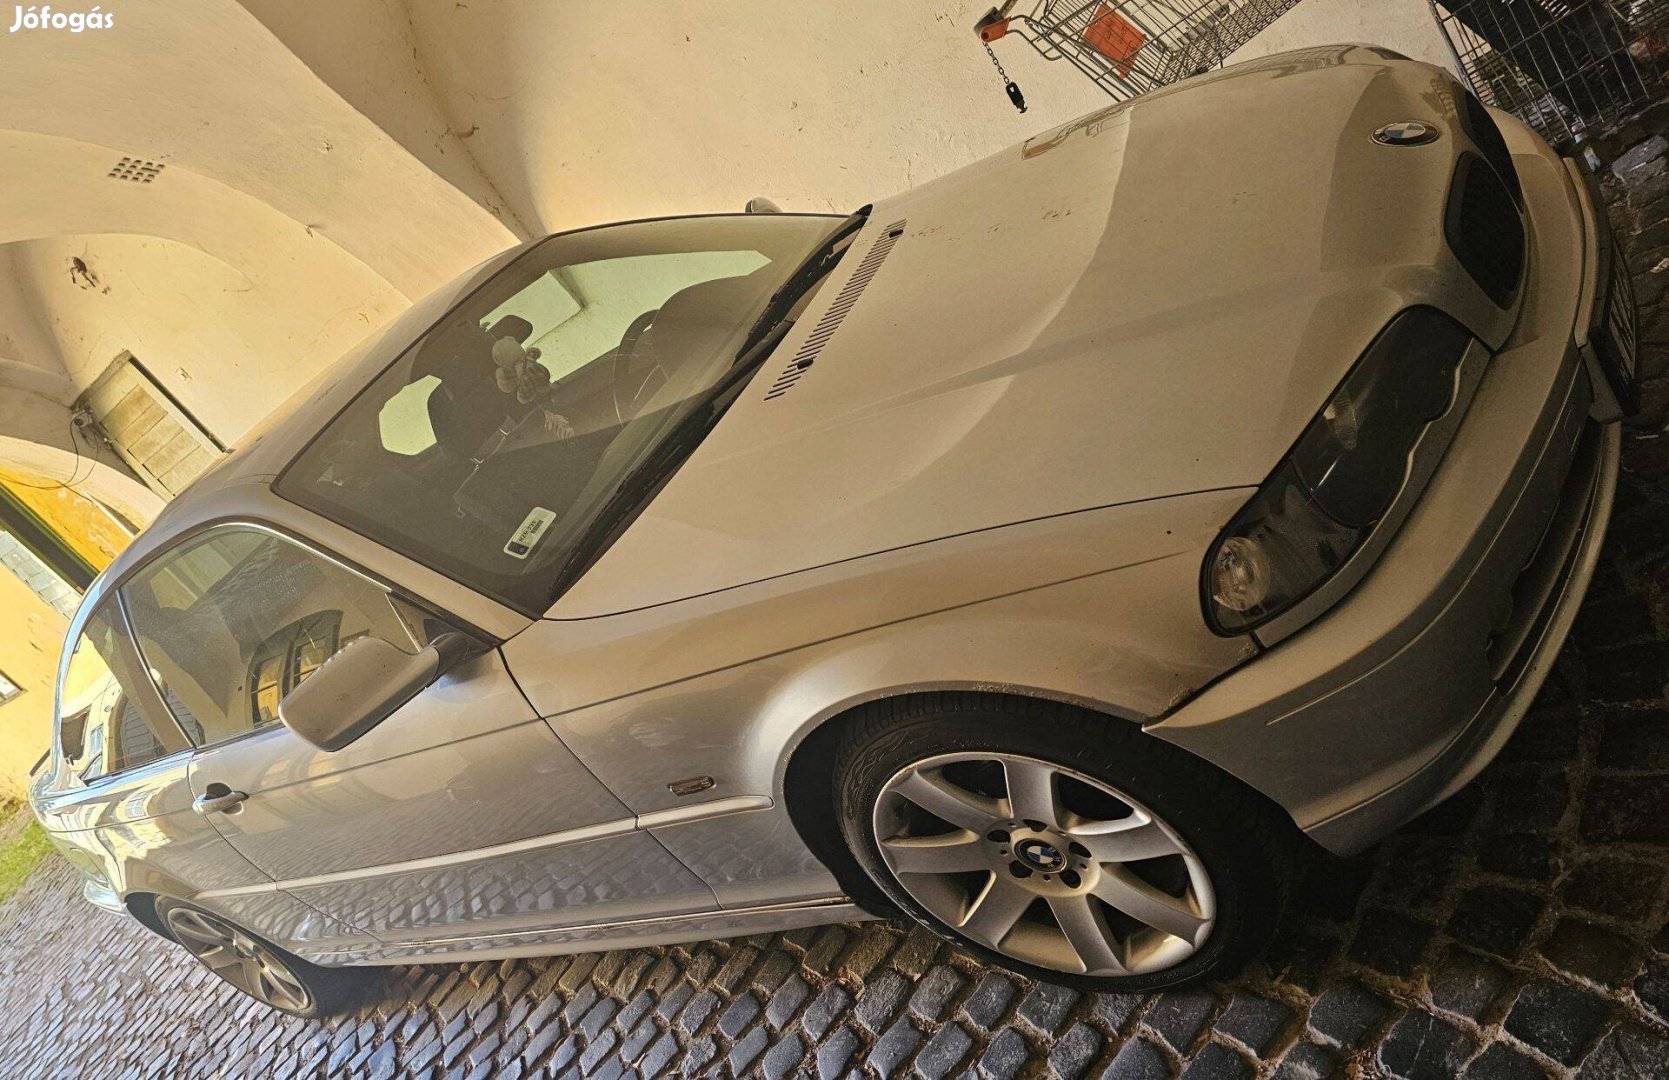 BMW E46 Ci eladó. 1.9 benzin. Műszaki vizsga vége 2026 március